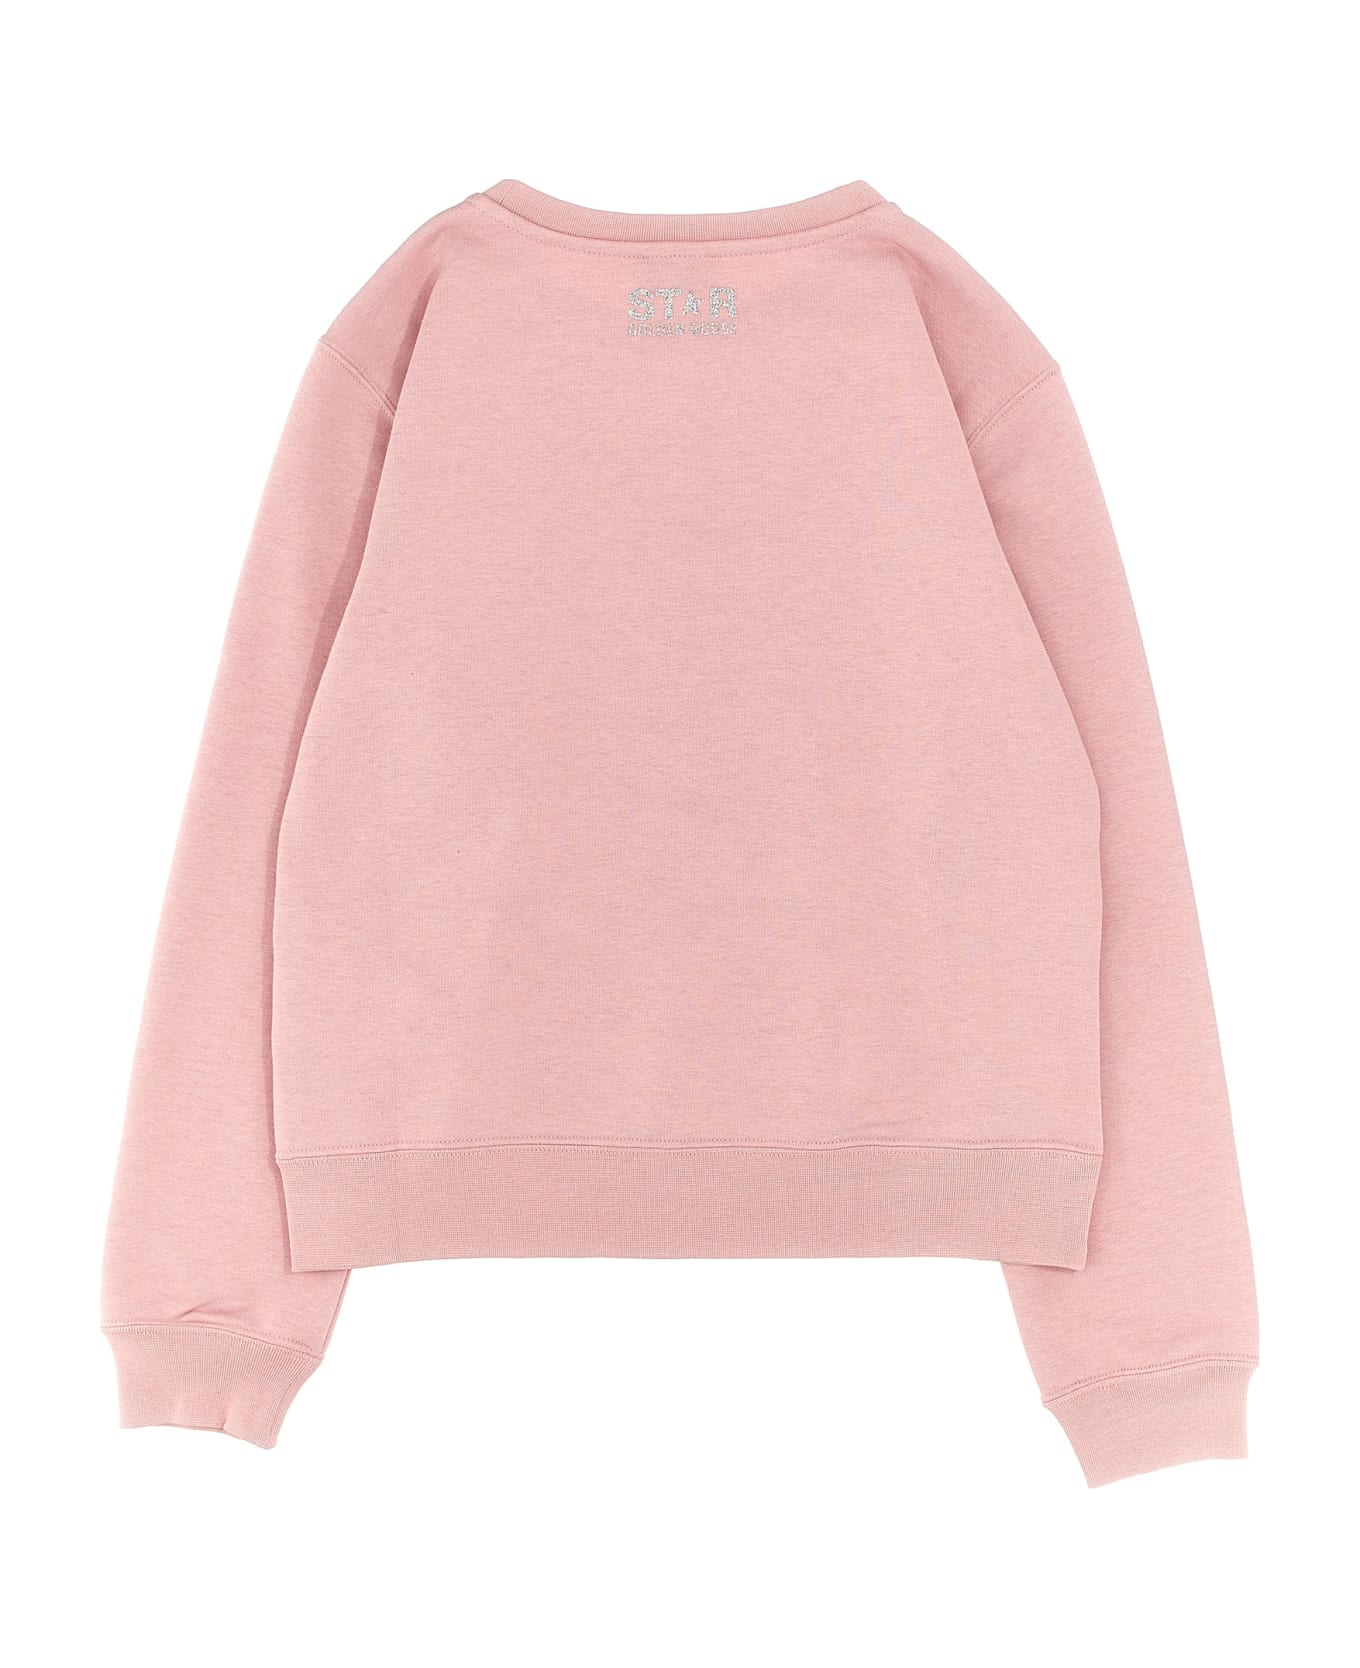 Golden Goose 'star' Sweatshirt - Pink